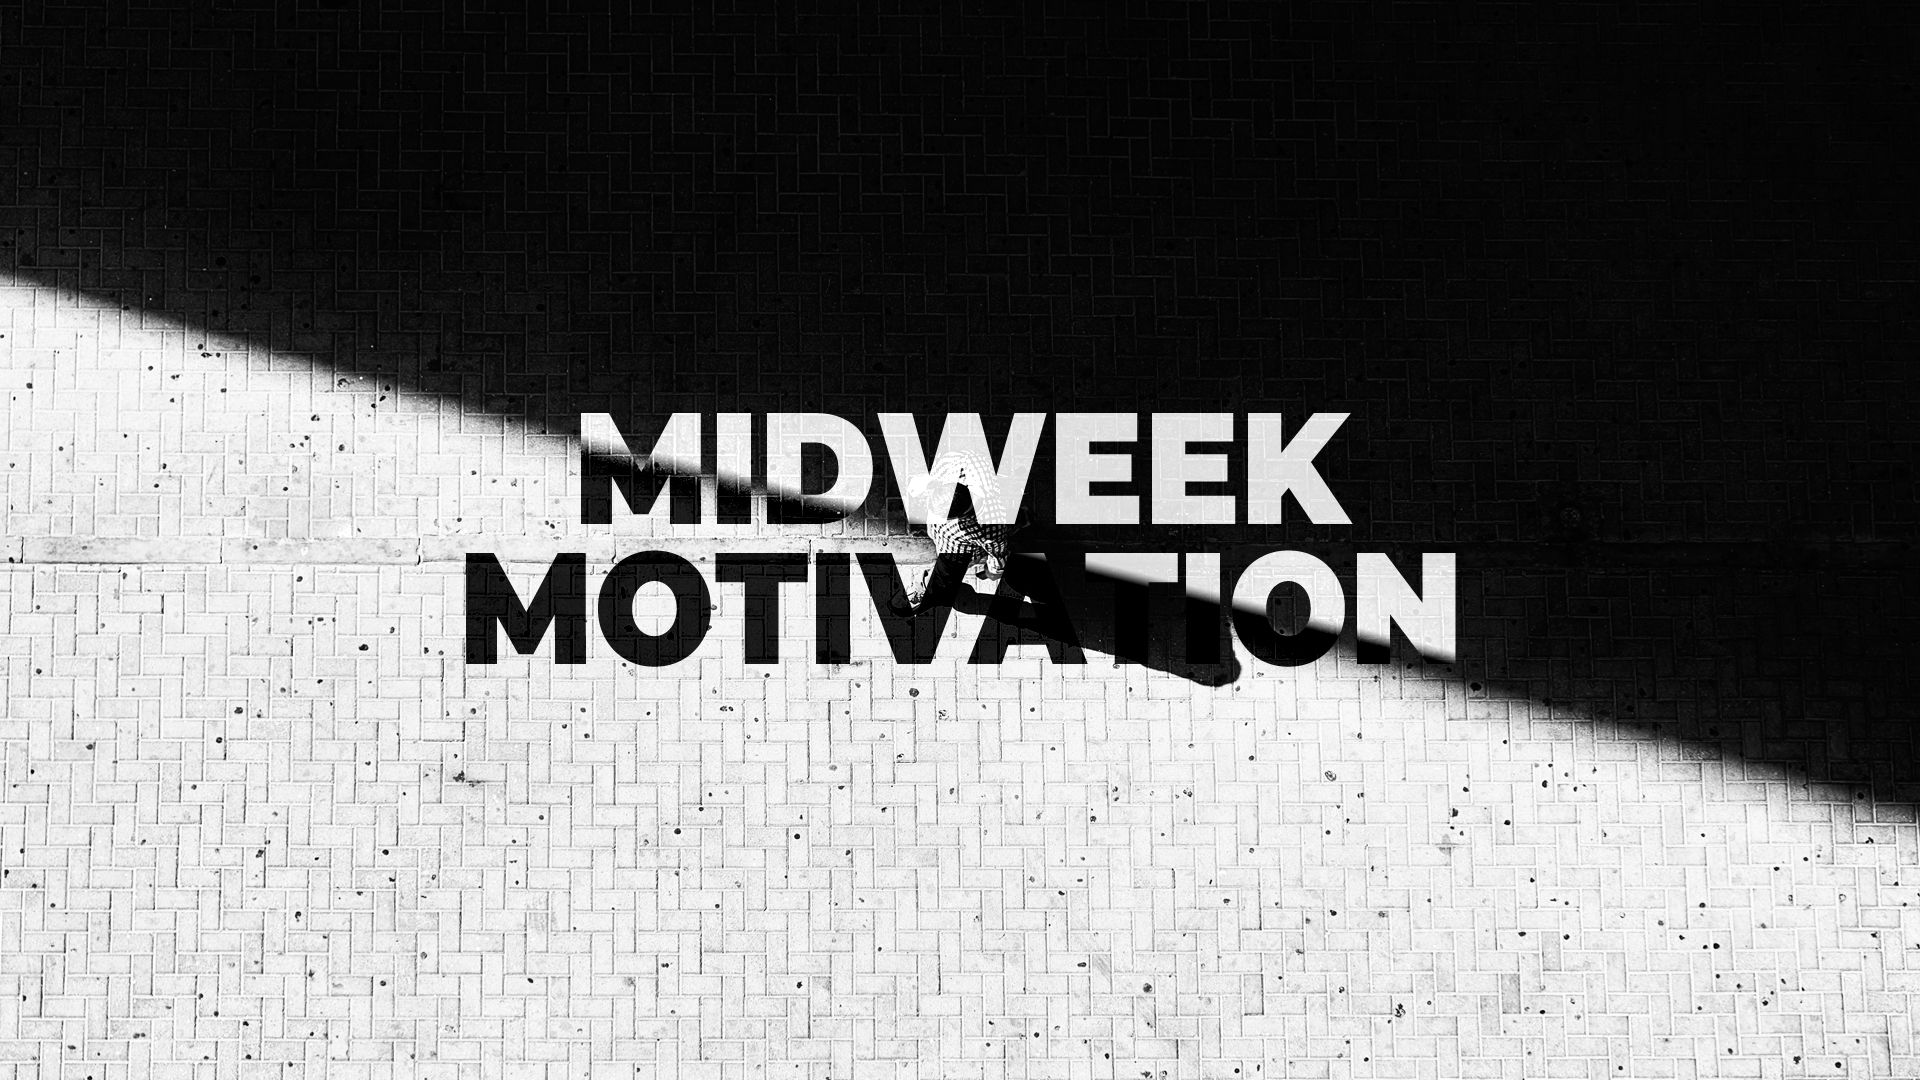 Midweek Motivation | Mark Febre